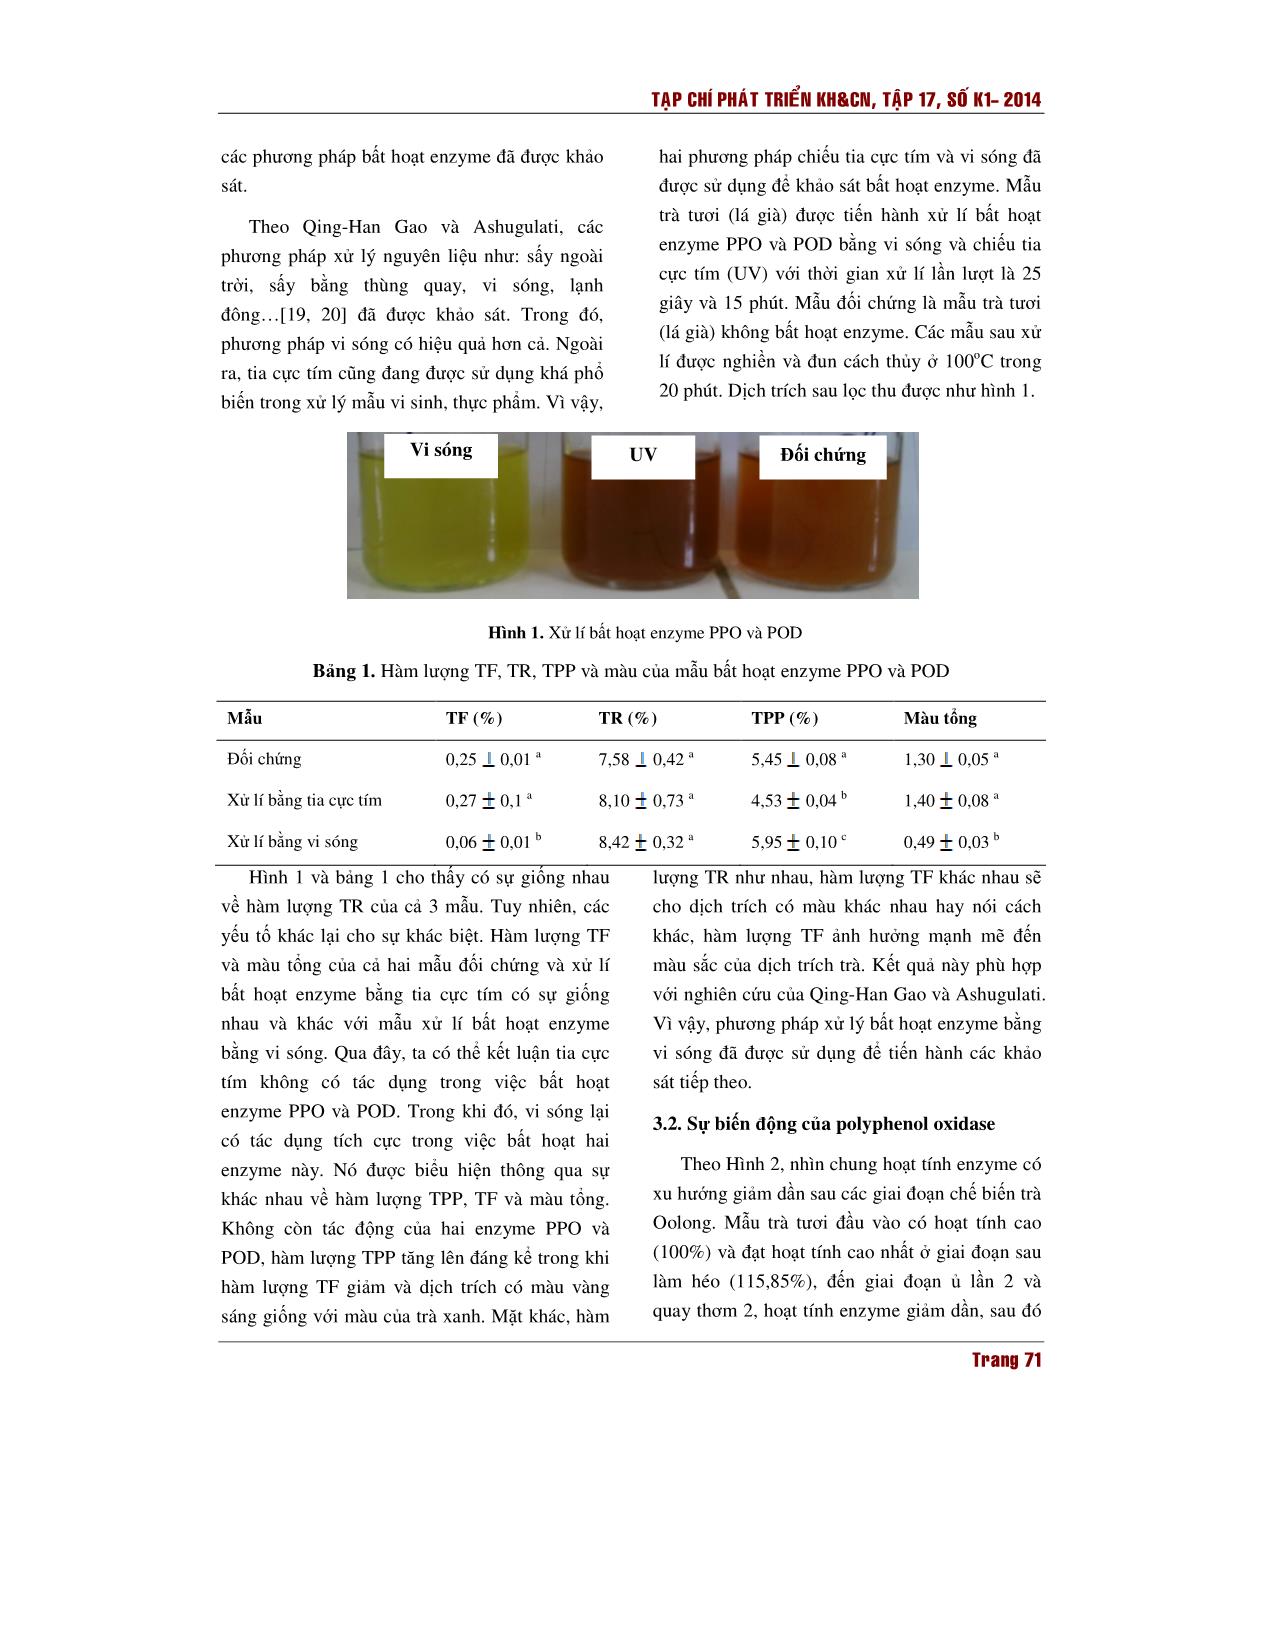 Sự biến động của các hợp chất phenolic trong lá trà trong quy trình chế biến trà Oolong trang 5